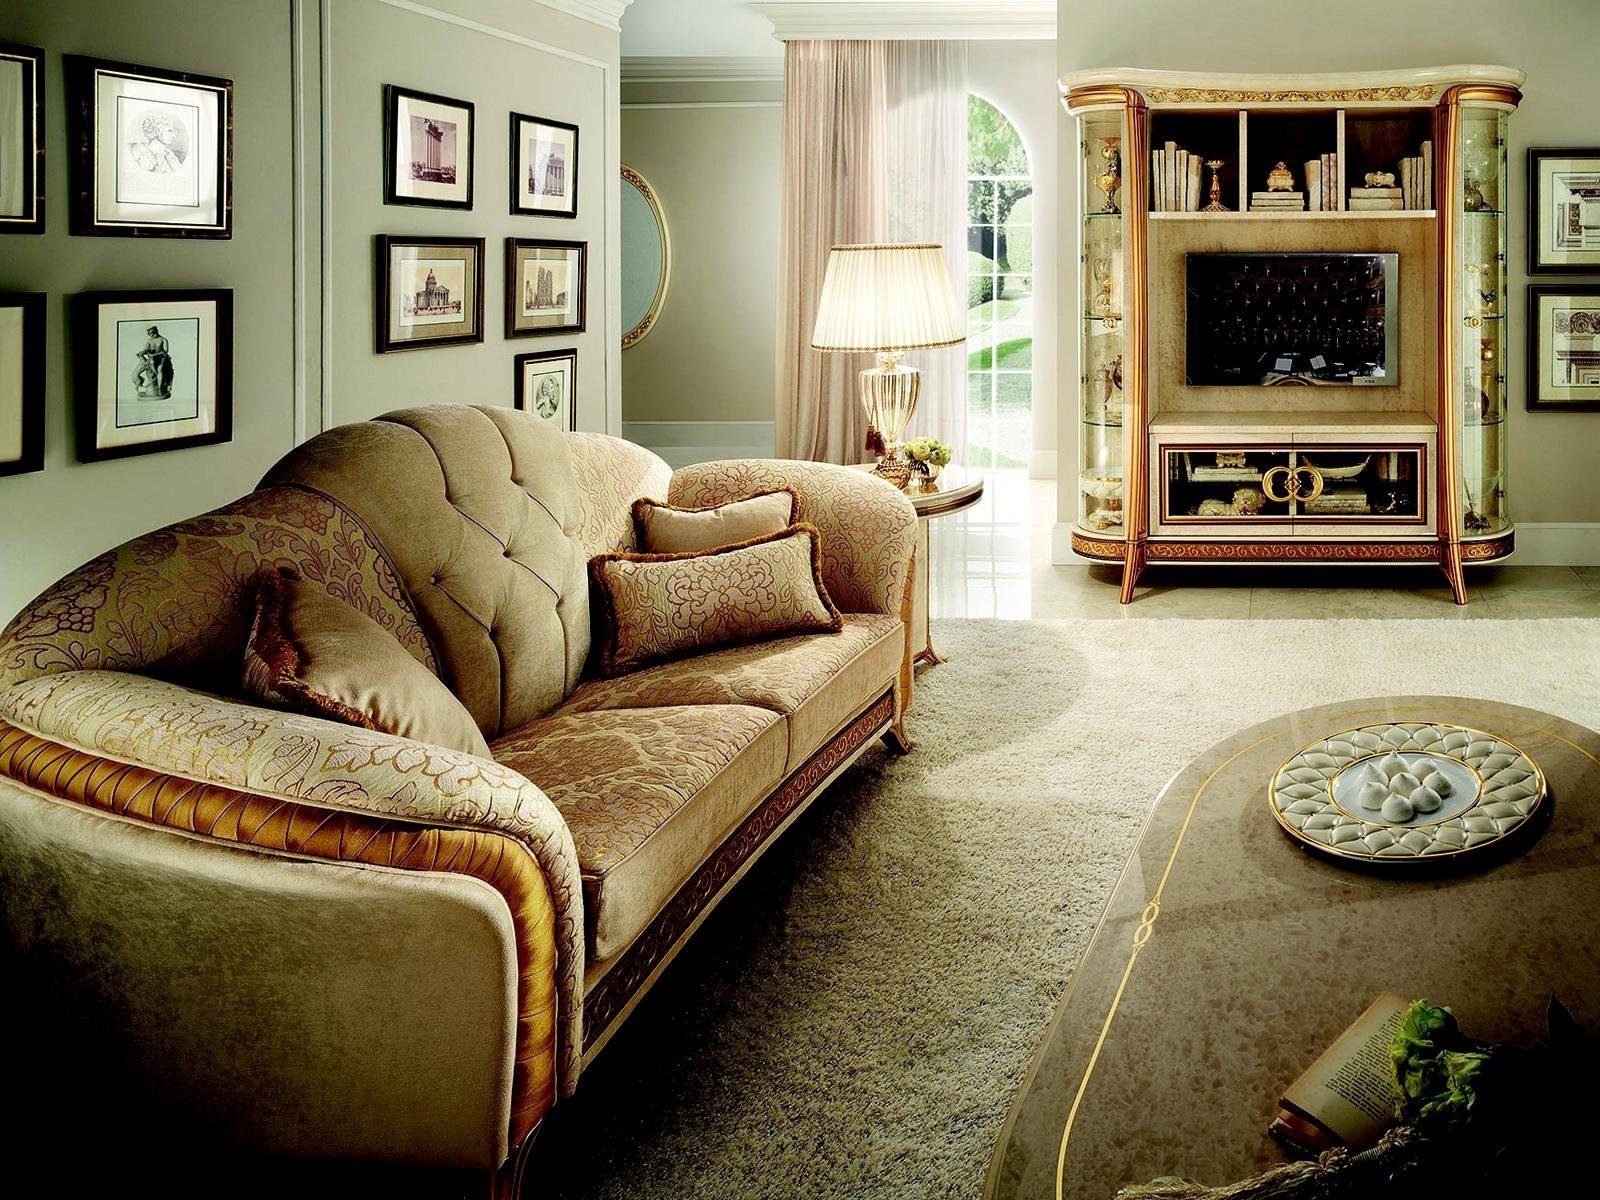 JVmoebel 2-Sitzer, Edle Designer Sofa Couch 2 Sitzer Polster Sofas Textil Jugendstil arredoclassic™